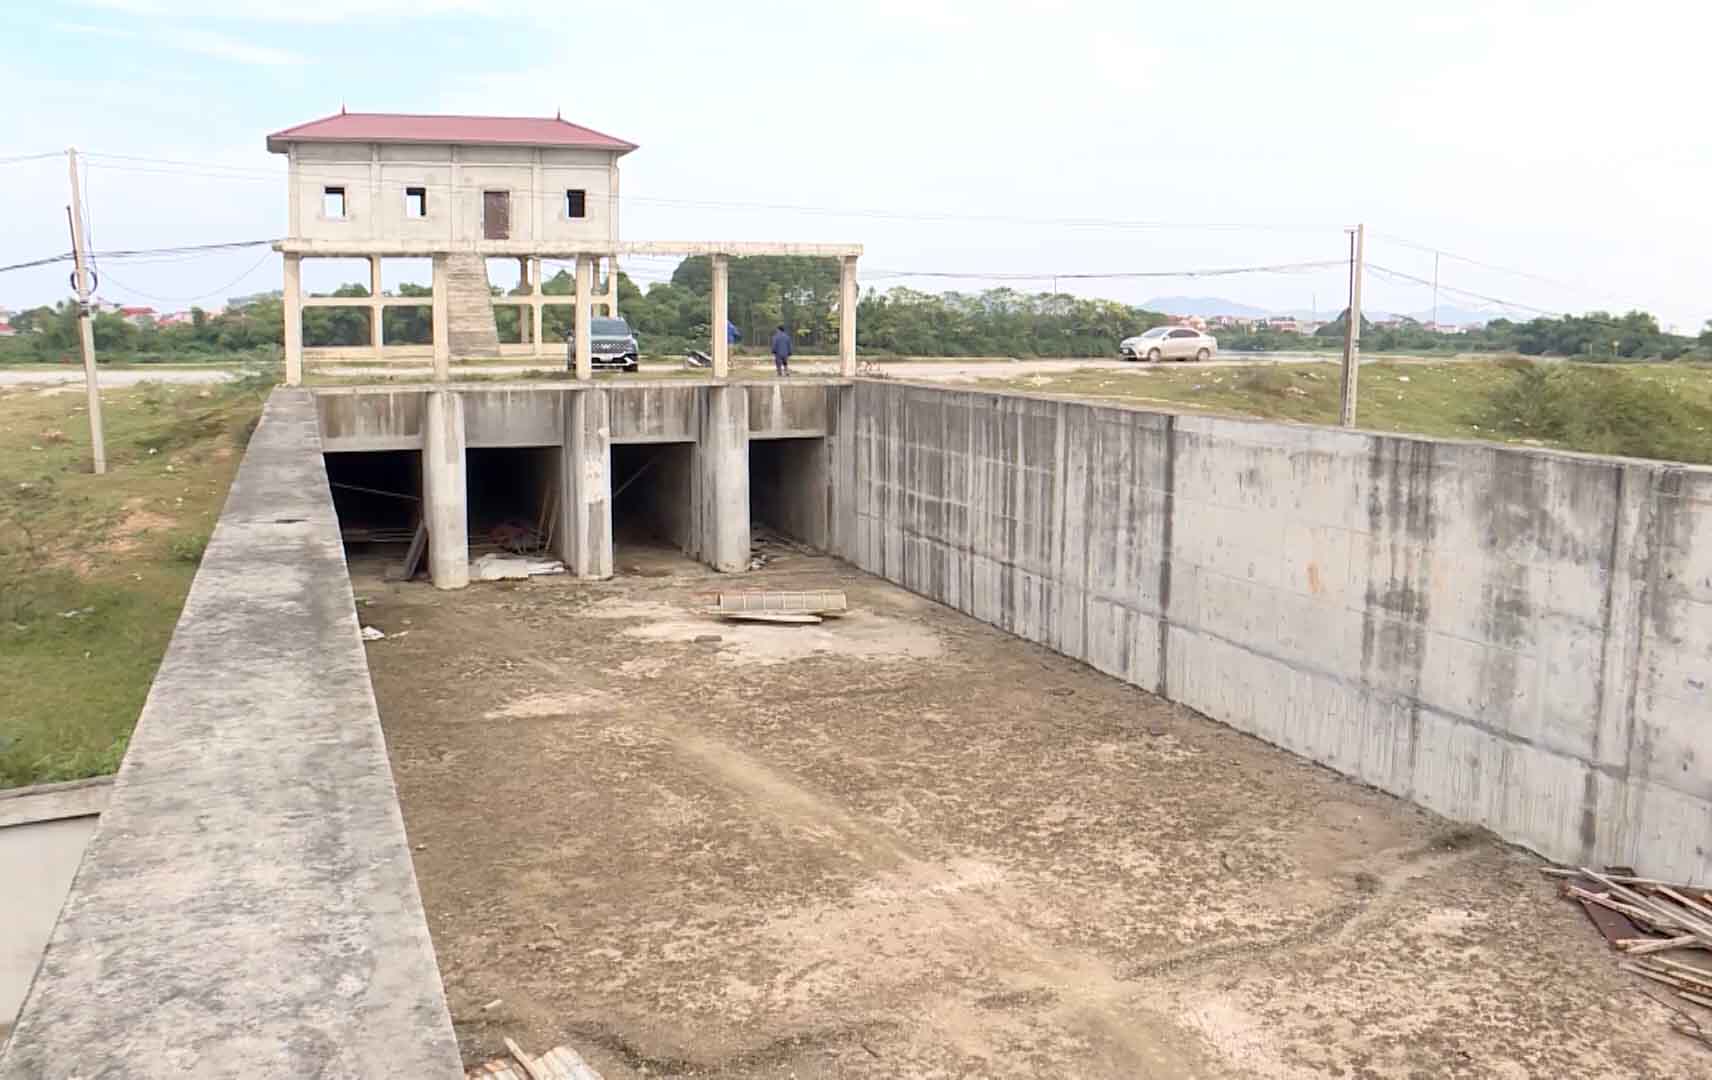 Dự án trạm bơm Hữu Chấp (phường Hoà Long, TP Bắc Ninh) có diện tích quy hoạch 2 ha, được triển khai xây dựng từ tháng 2.2019.  